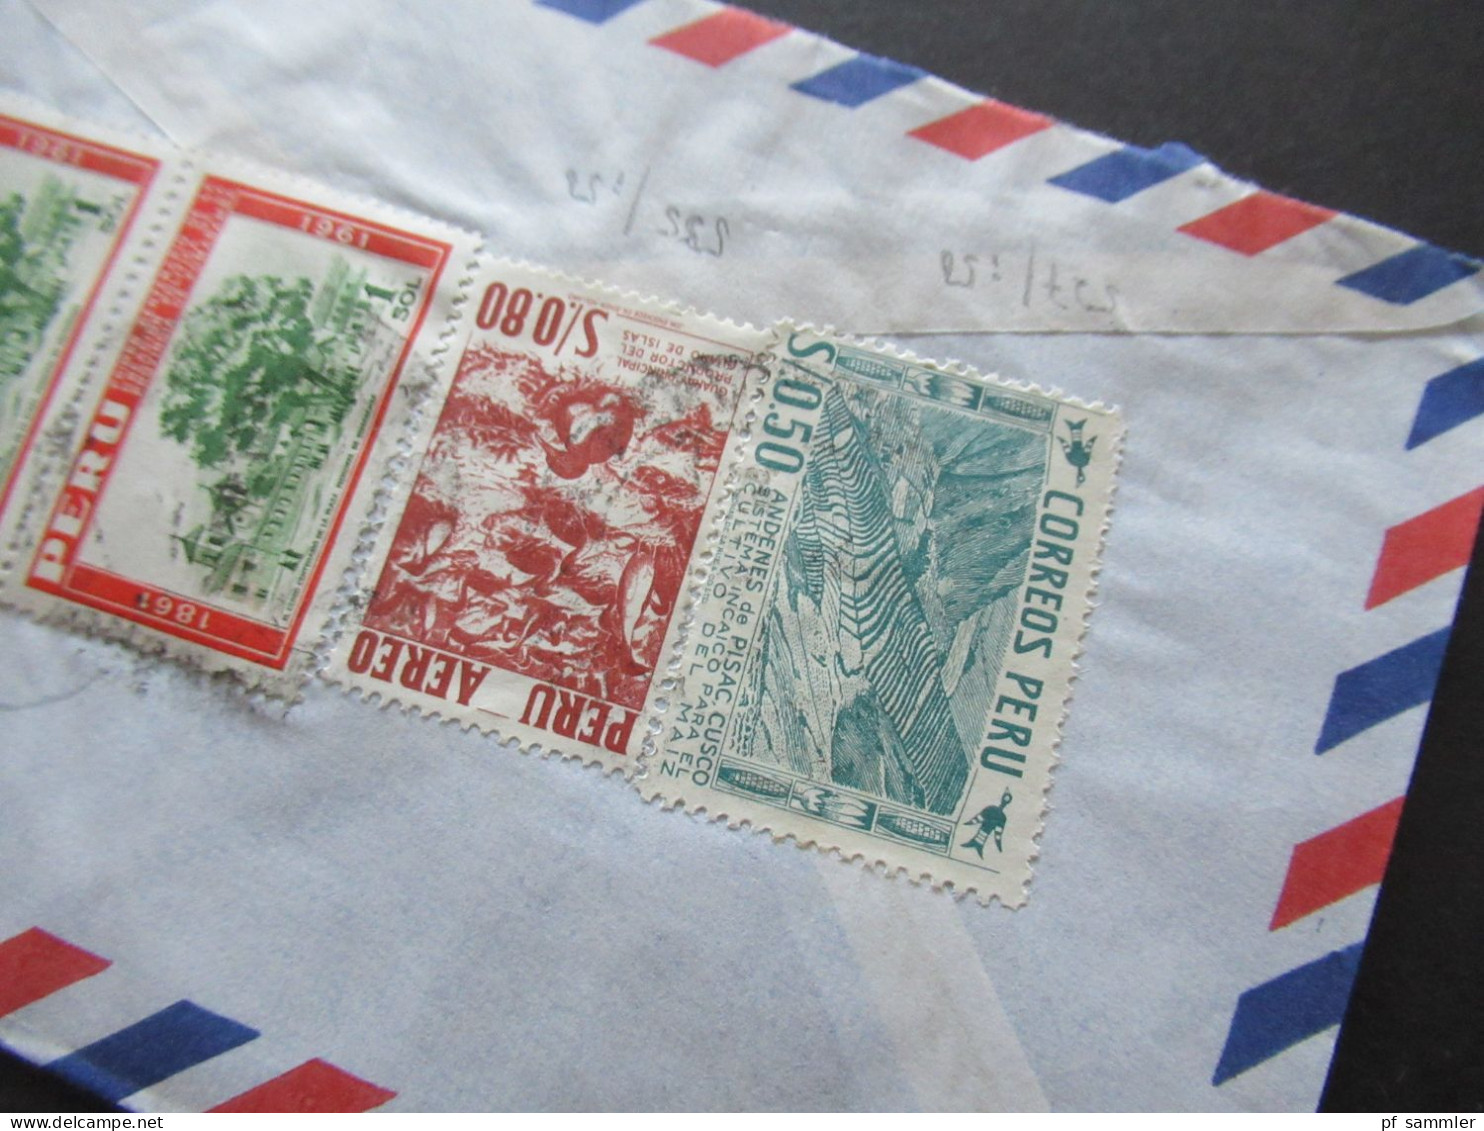 Südamerika Peru By Air Mail Luftpost 1963 Firmenumschlag Lima Electro S.A. Lima Peru 6x Auslandsbrief nach Menden